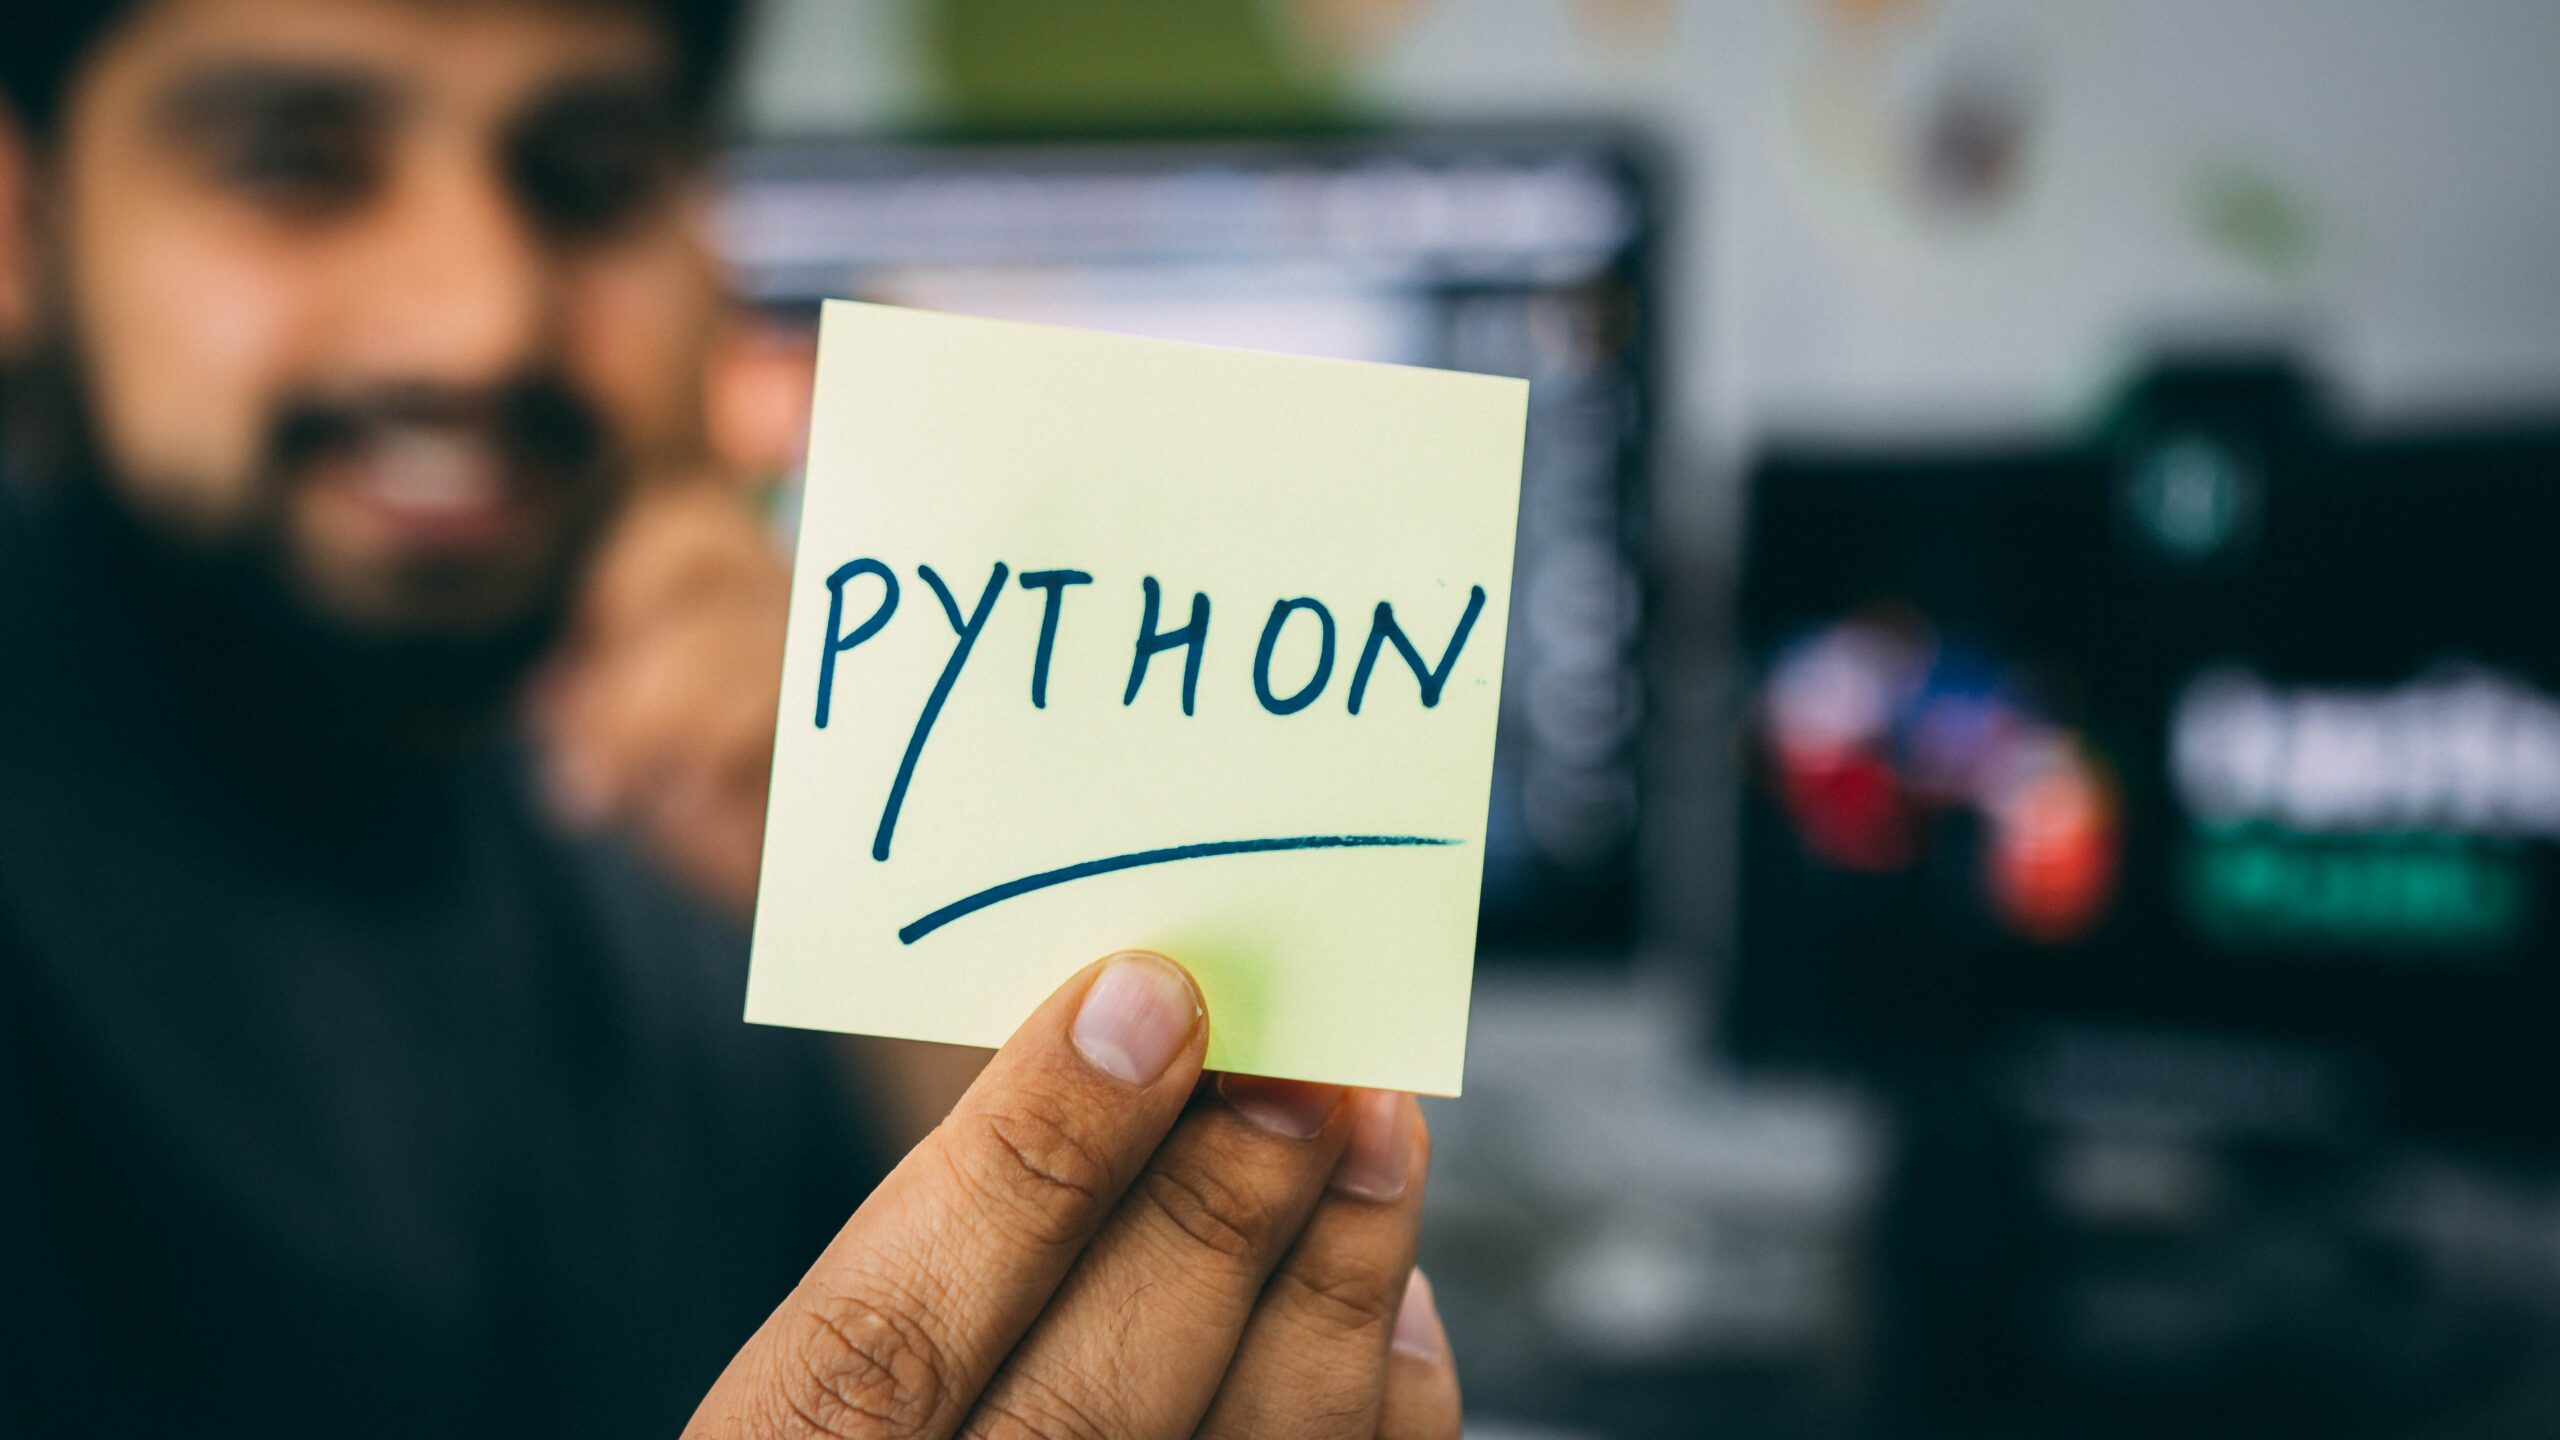 ブルートラベルエンジニア プログラミング言語におすすめなんて存在しない 収入を上げたい：Go、Python